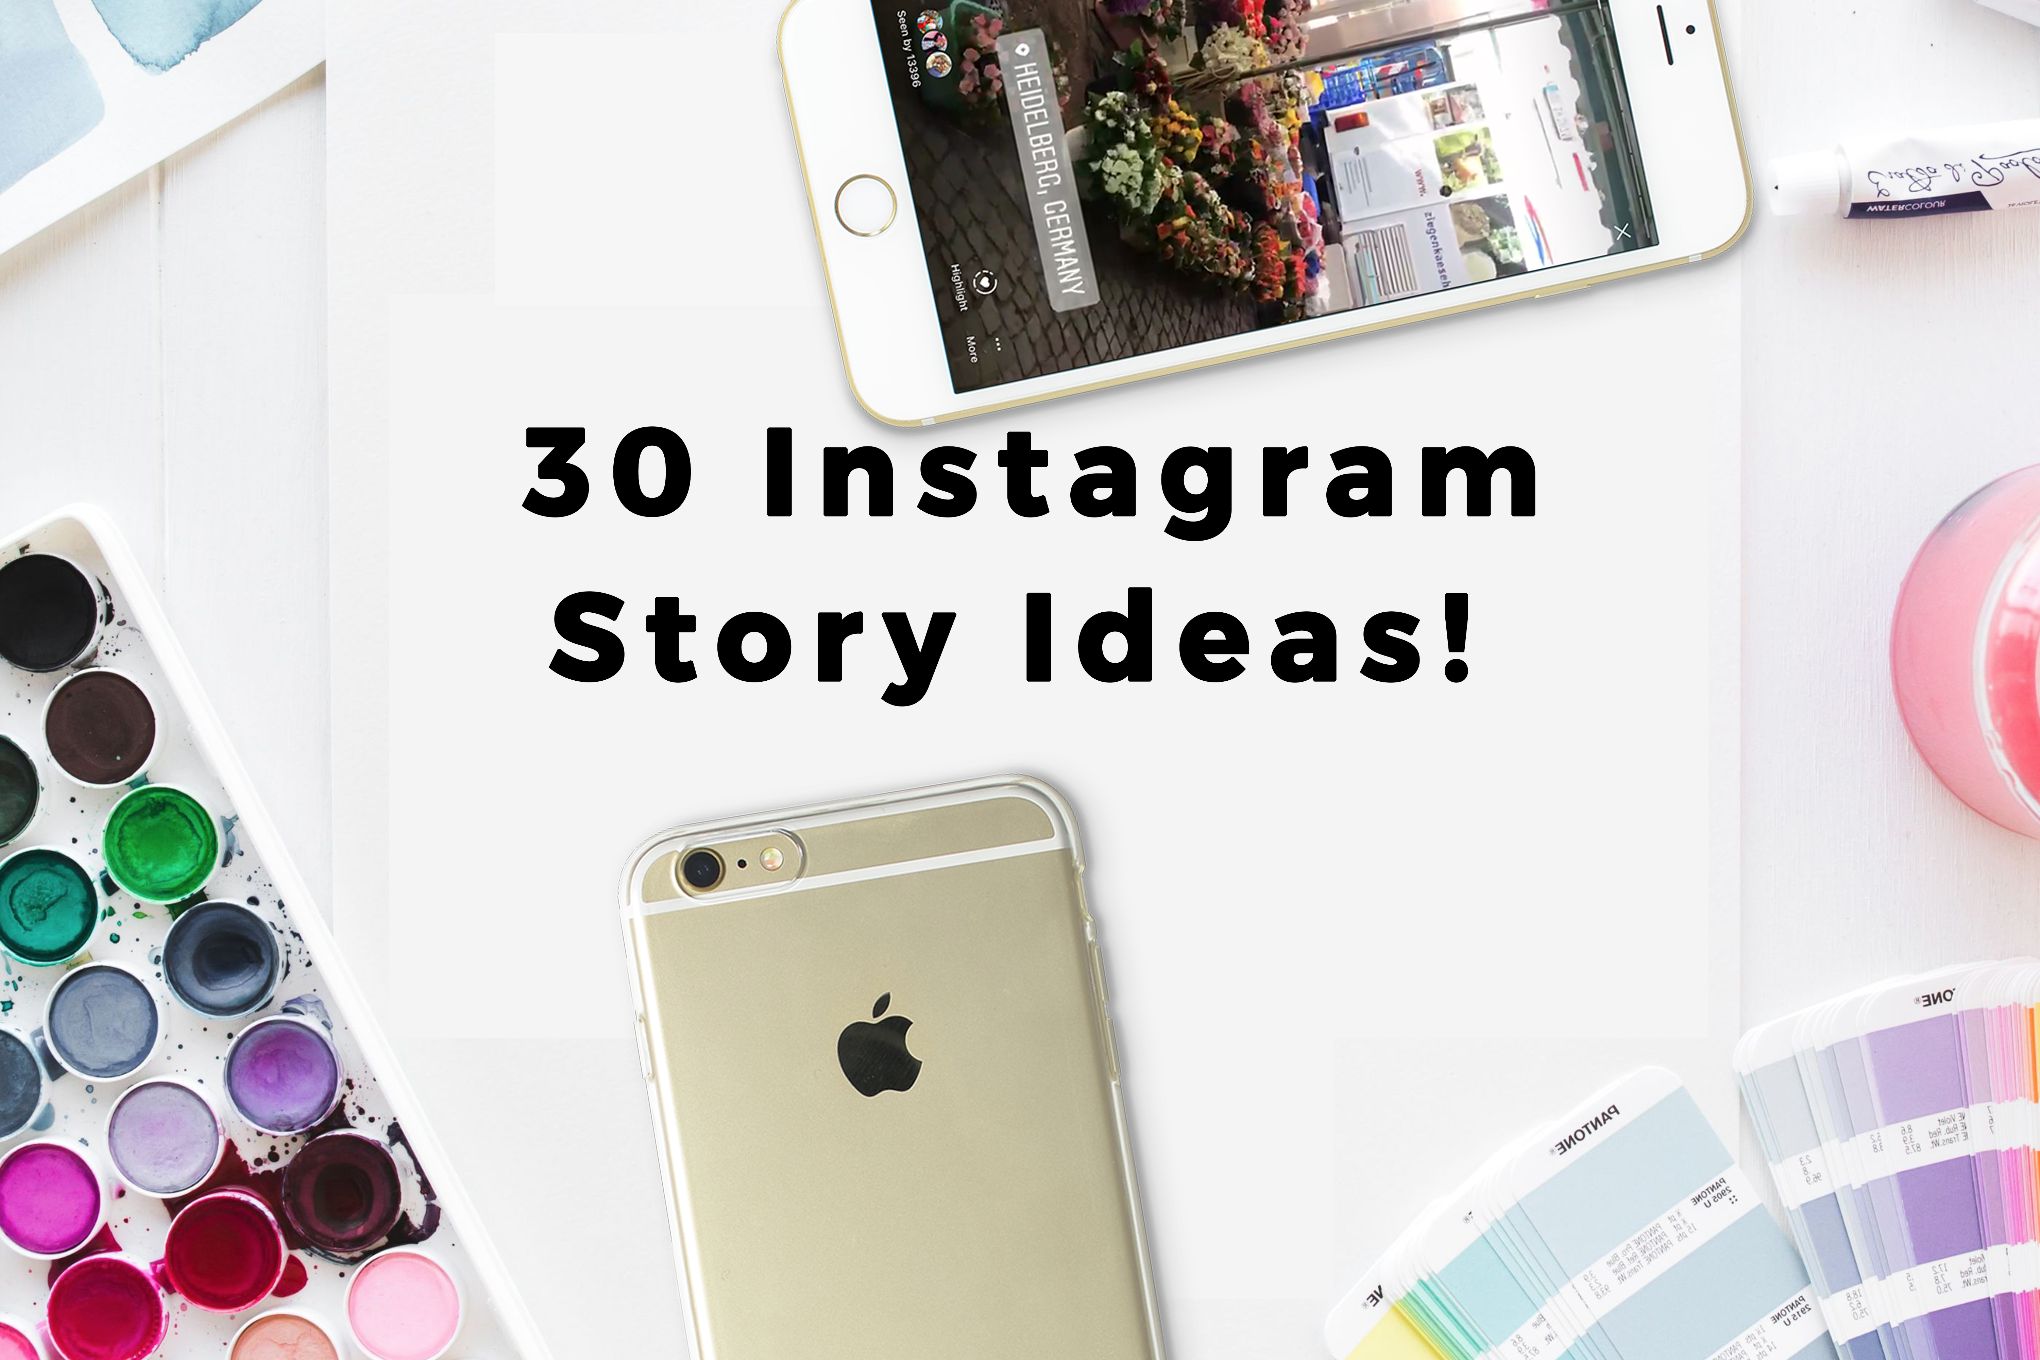 30 Instagram Story Ideas - Helene in Between